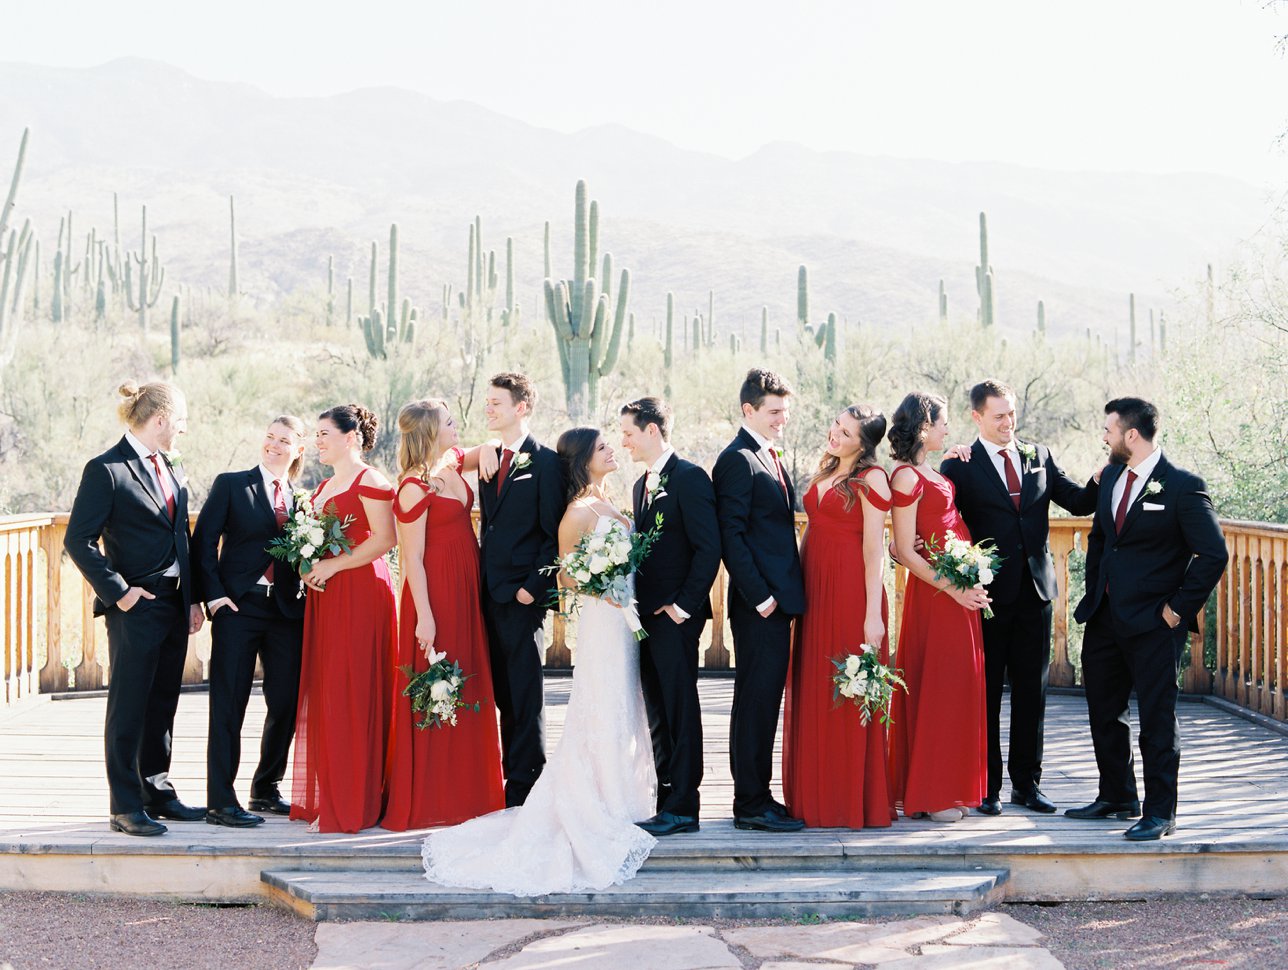 Tanque Verde Ranch wedding photos - Rachel Solomon Photography